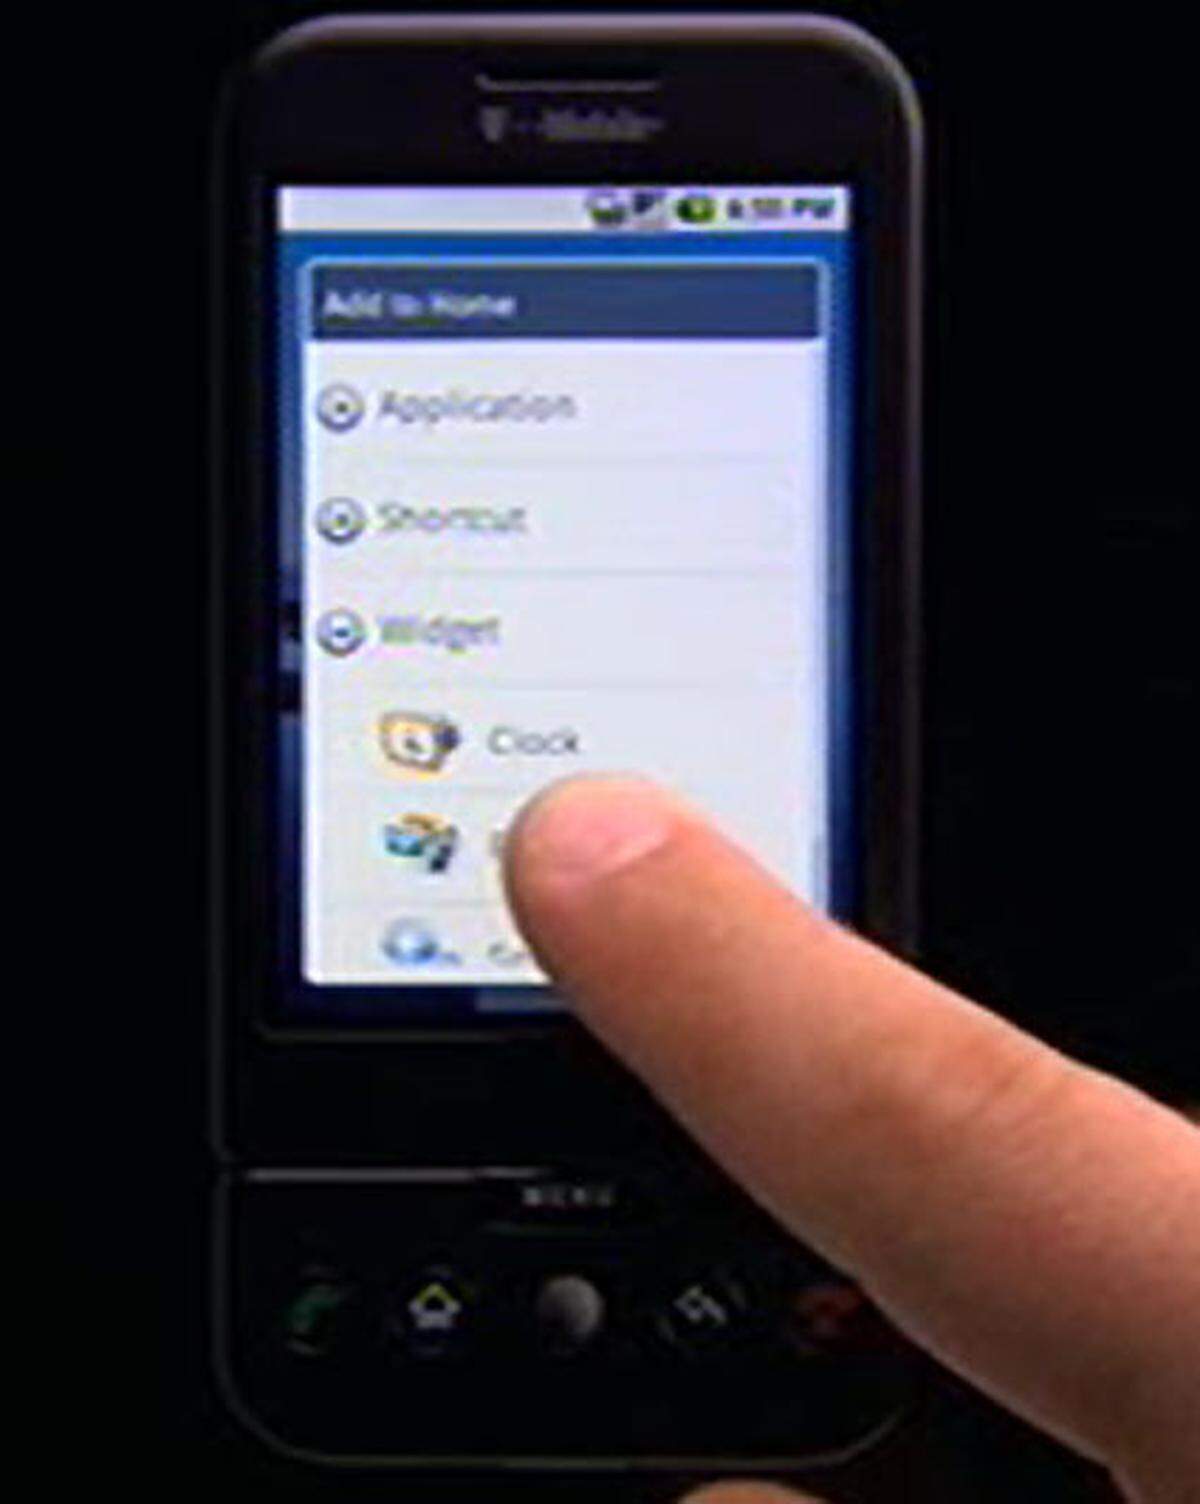 Dem Startsceen des Handys können unterschiedliche "Widgets" hinzugefügt werden.